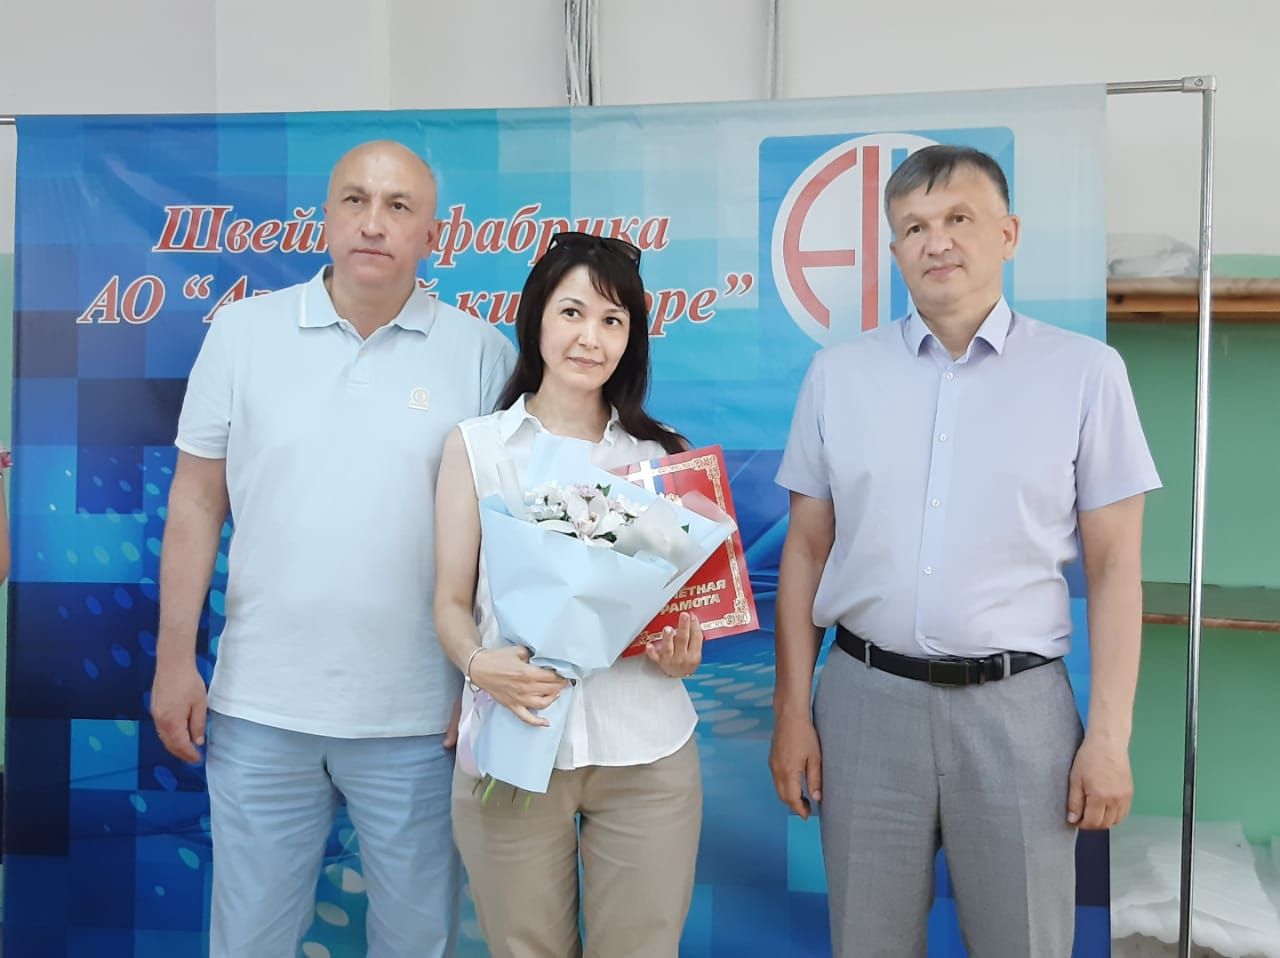 В Азнакаево отметили День работников легкой промышленности